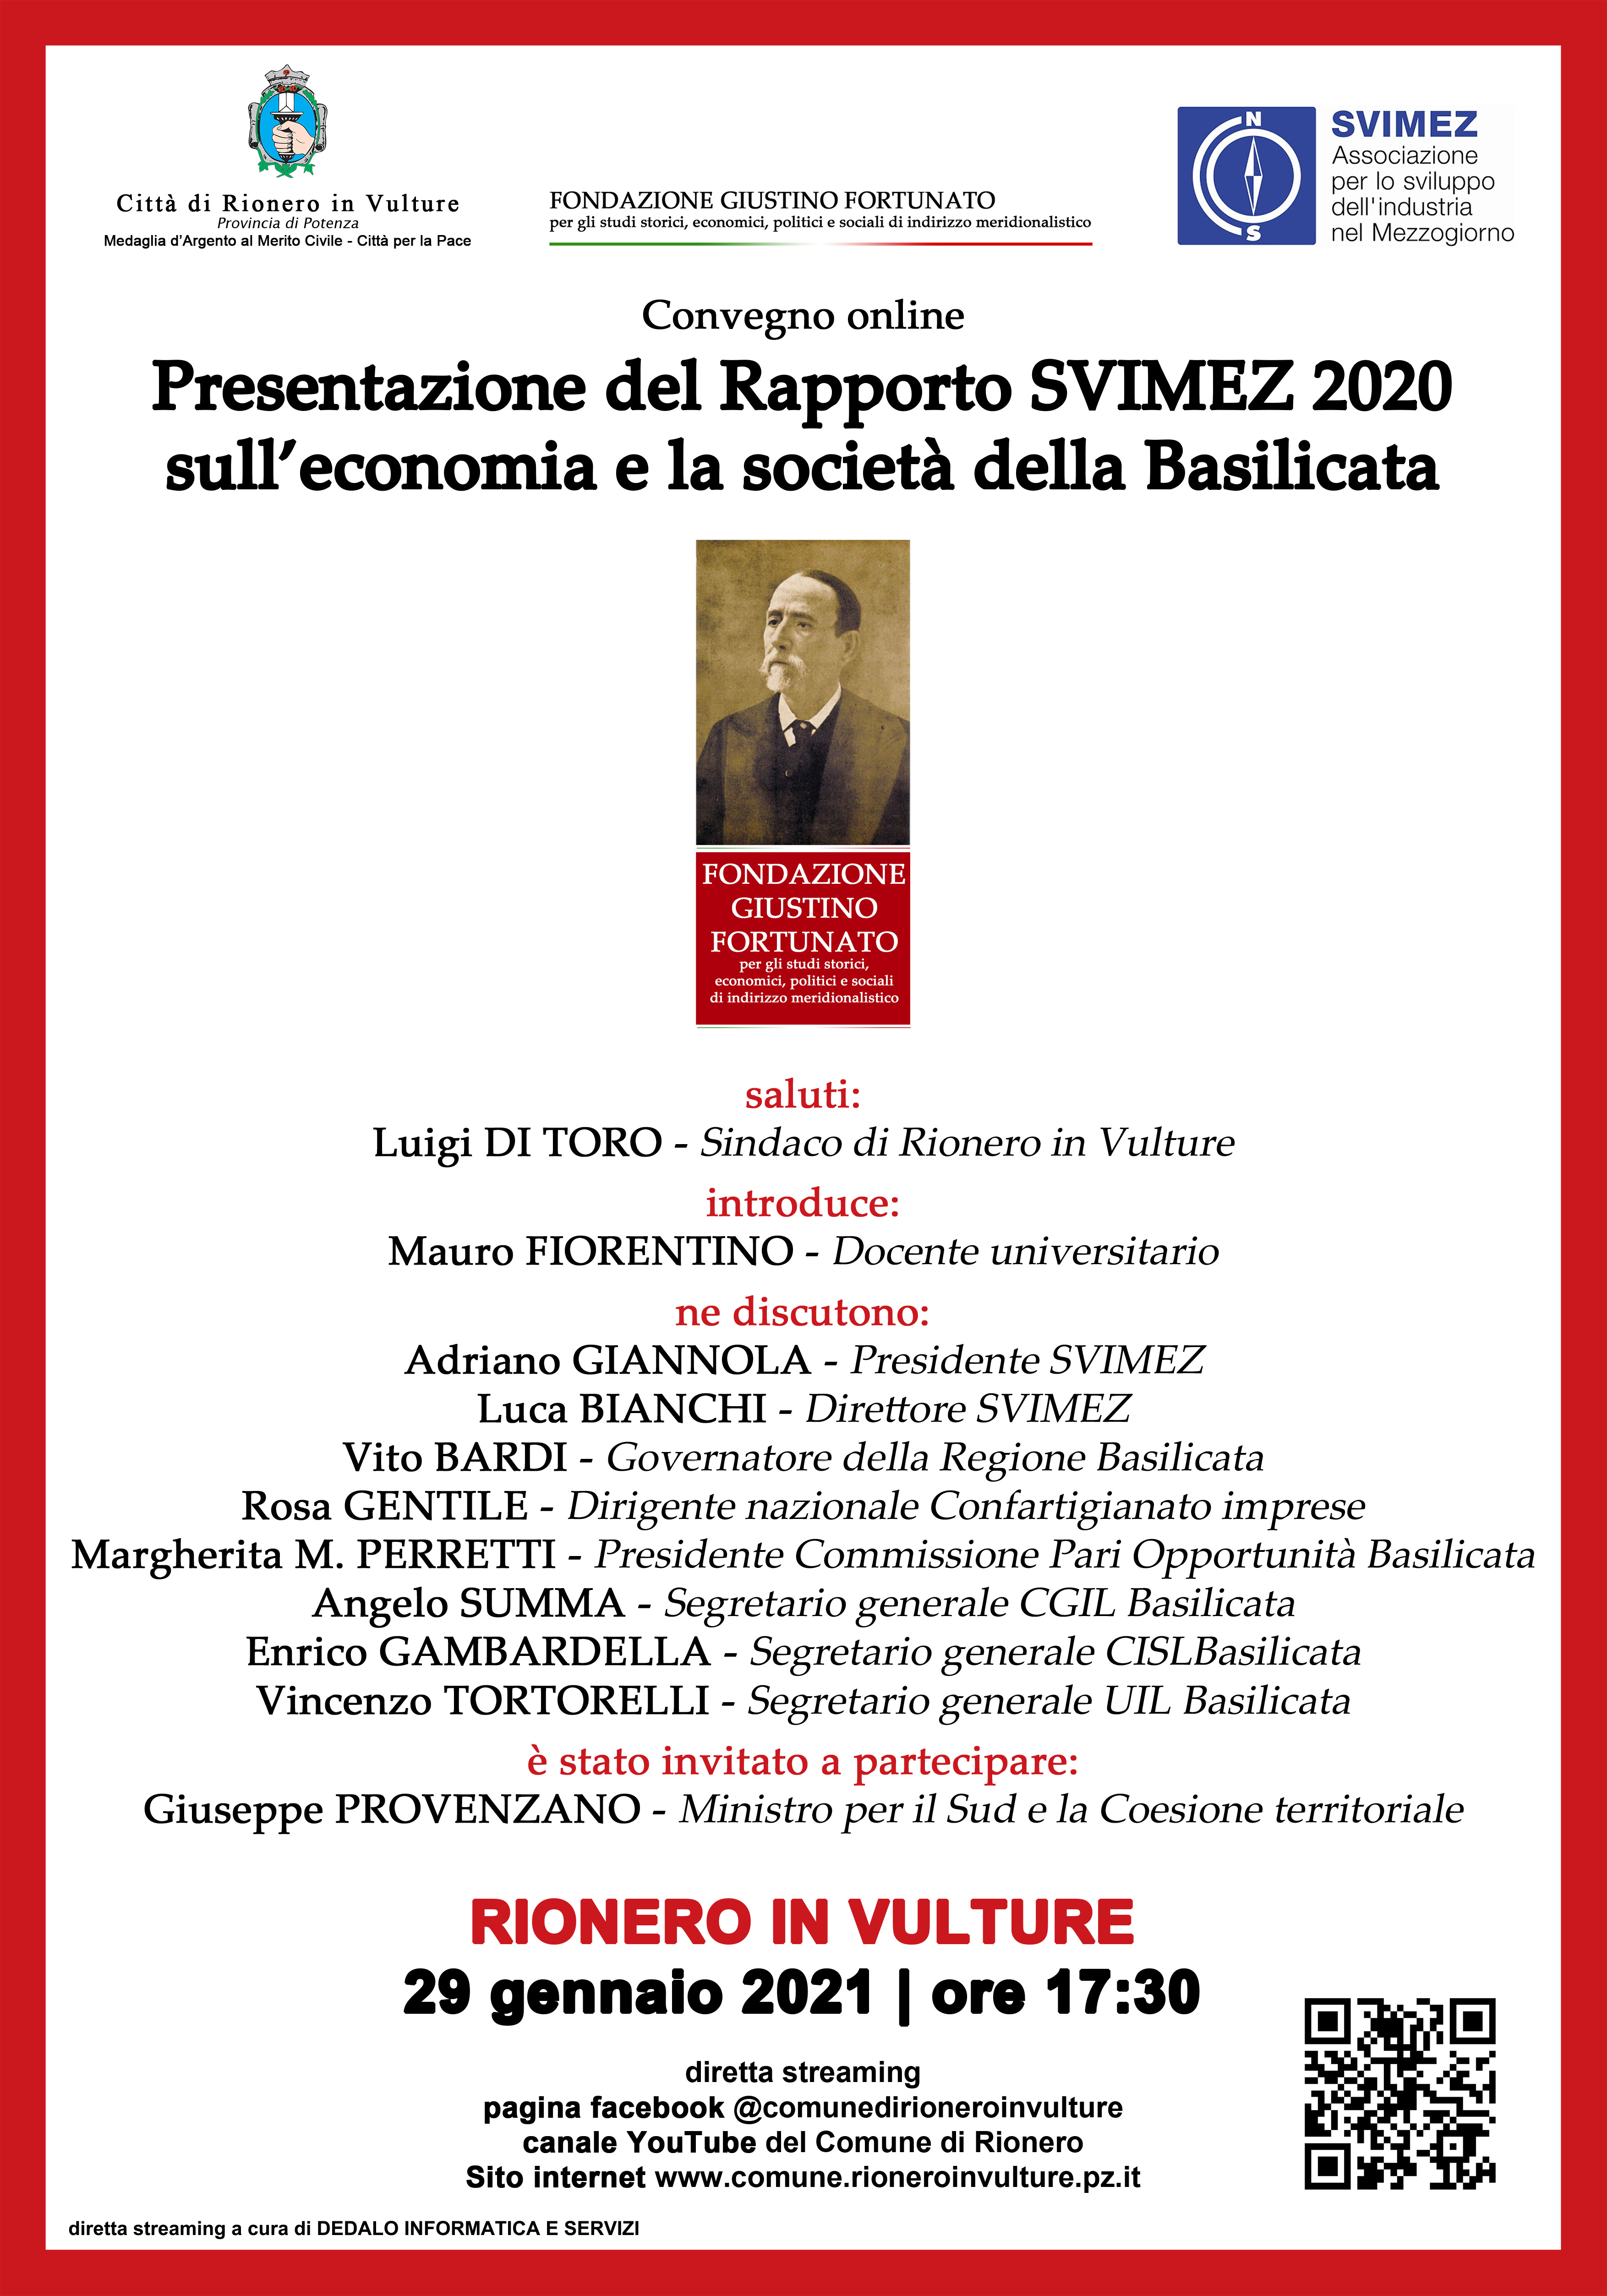 Convegno online. Presentazione del Rapporto SVIMEZ 2020 sull'economia e la società della Basilicata